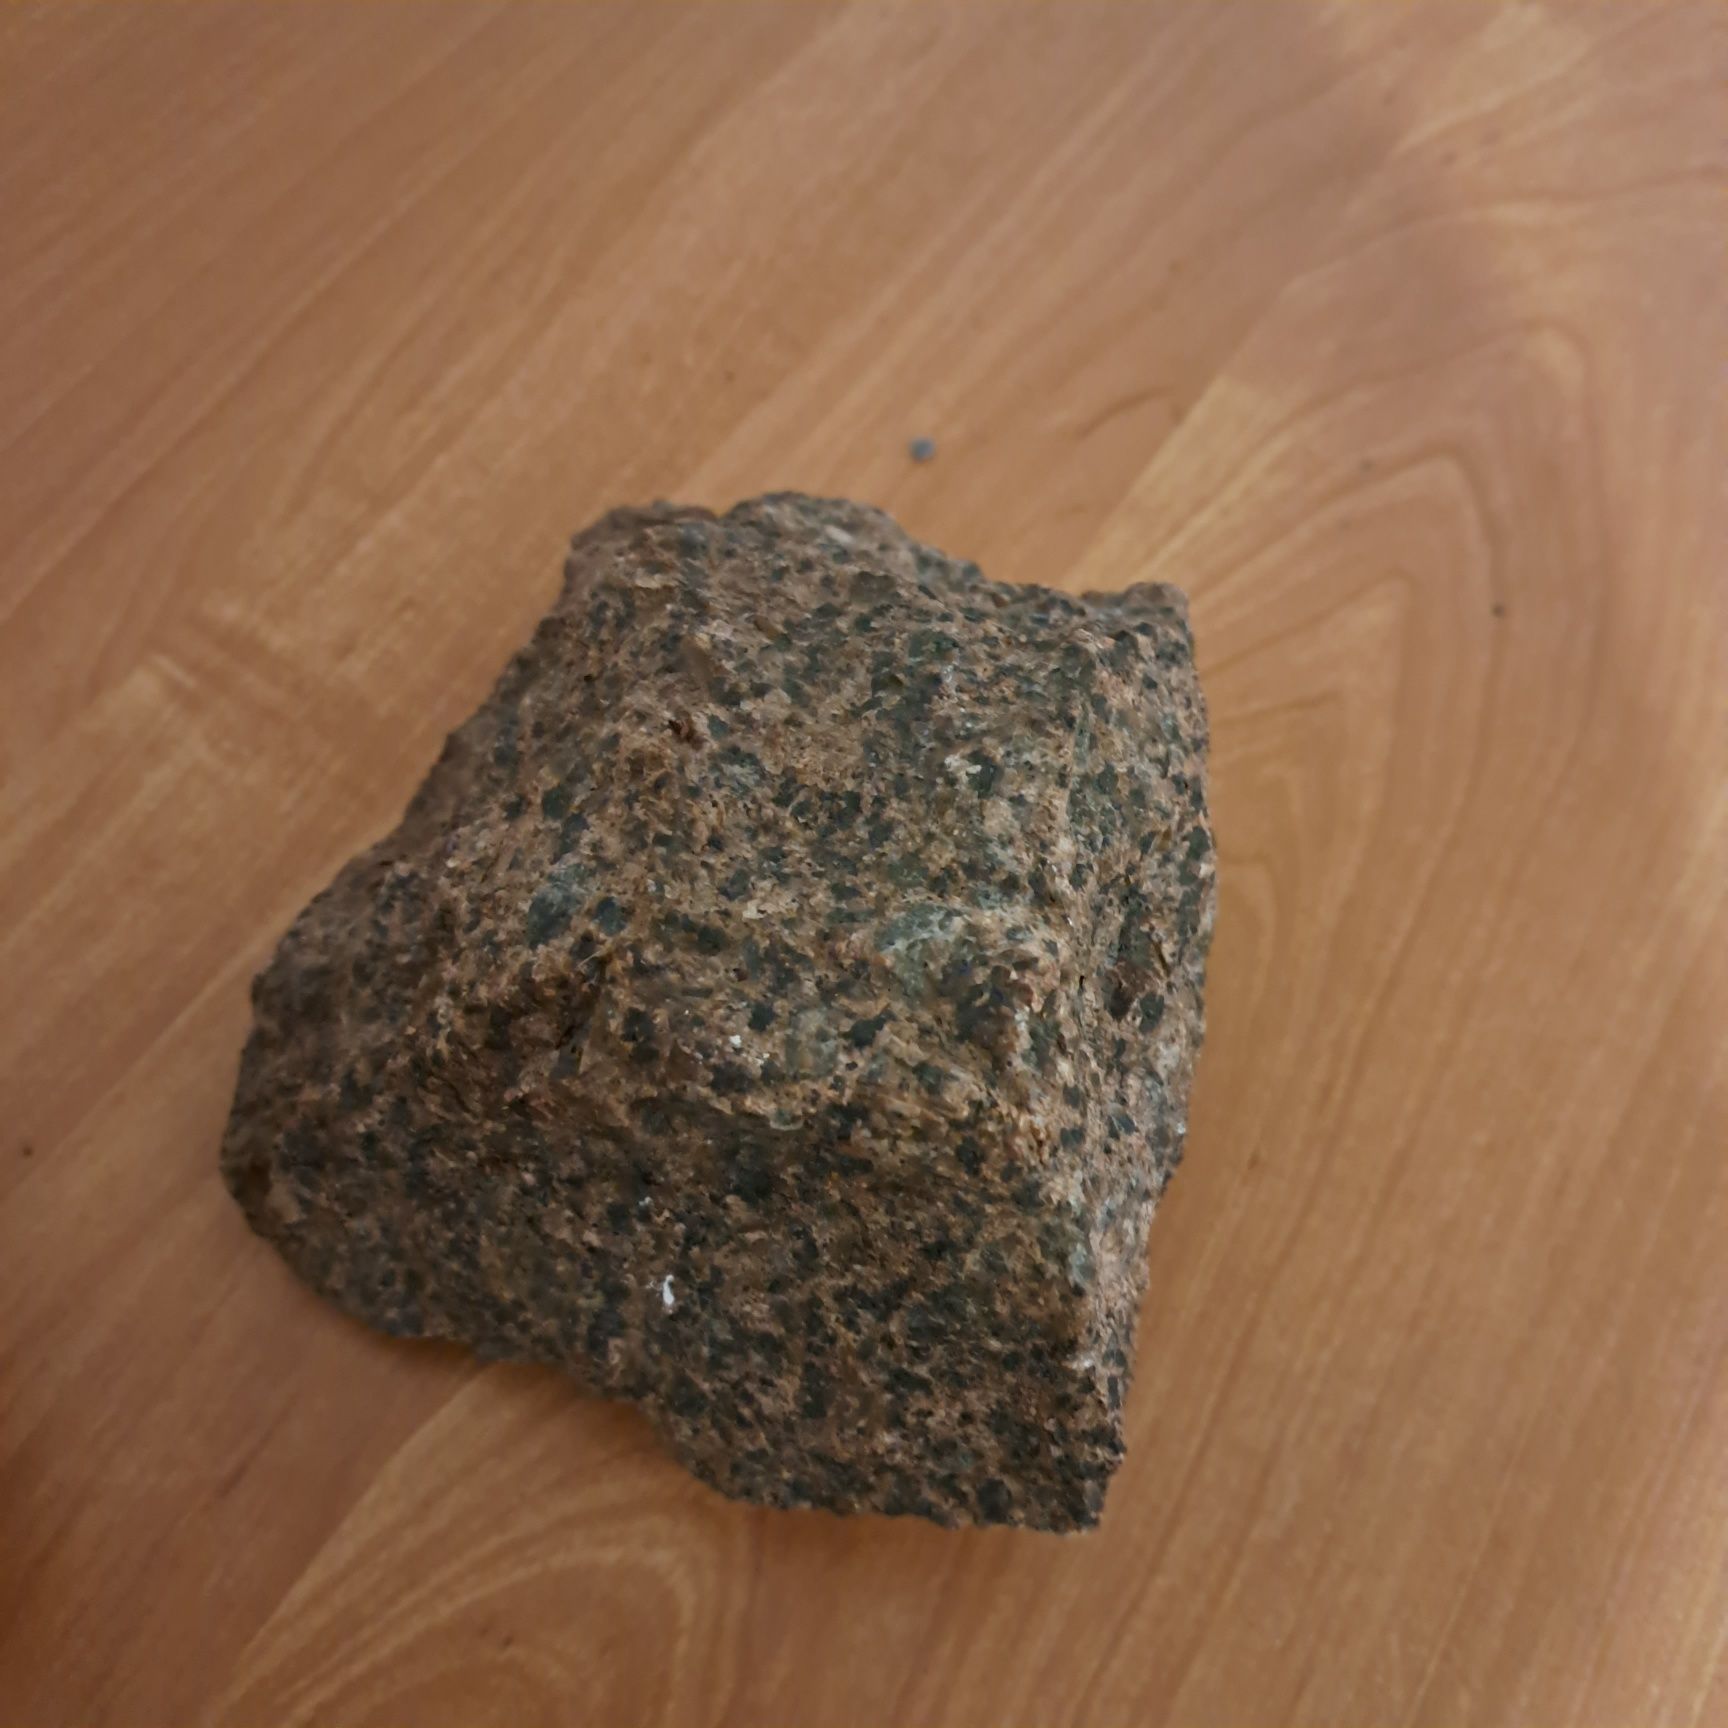 Kamienie wulkaniczne i granit do akwarium/ terrarium